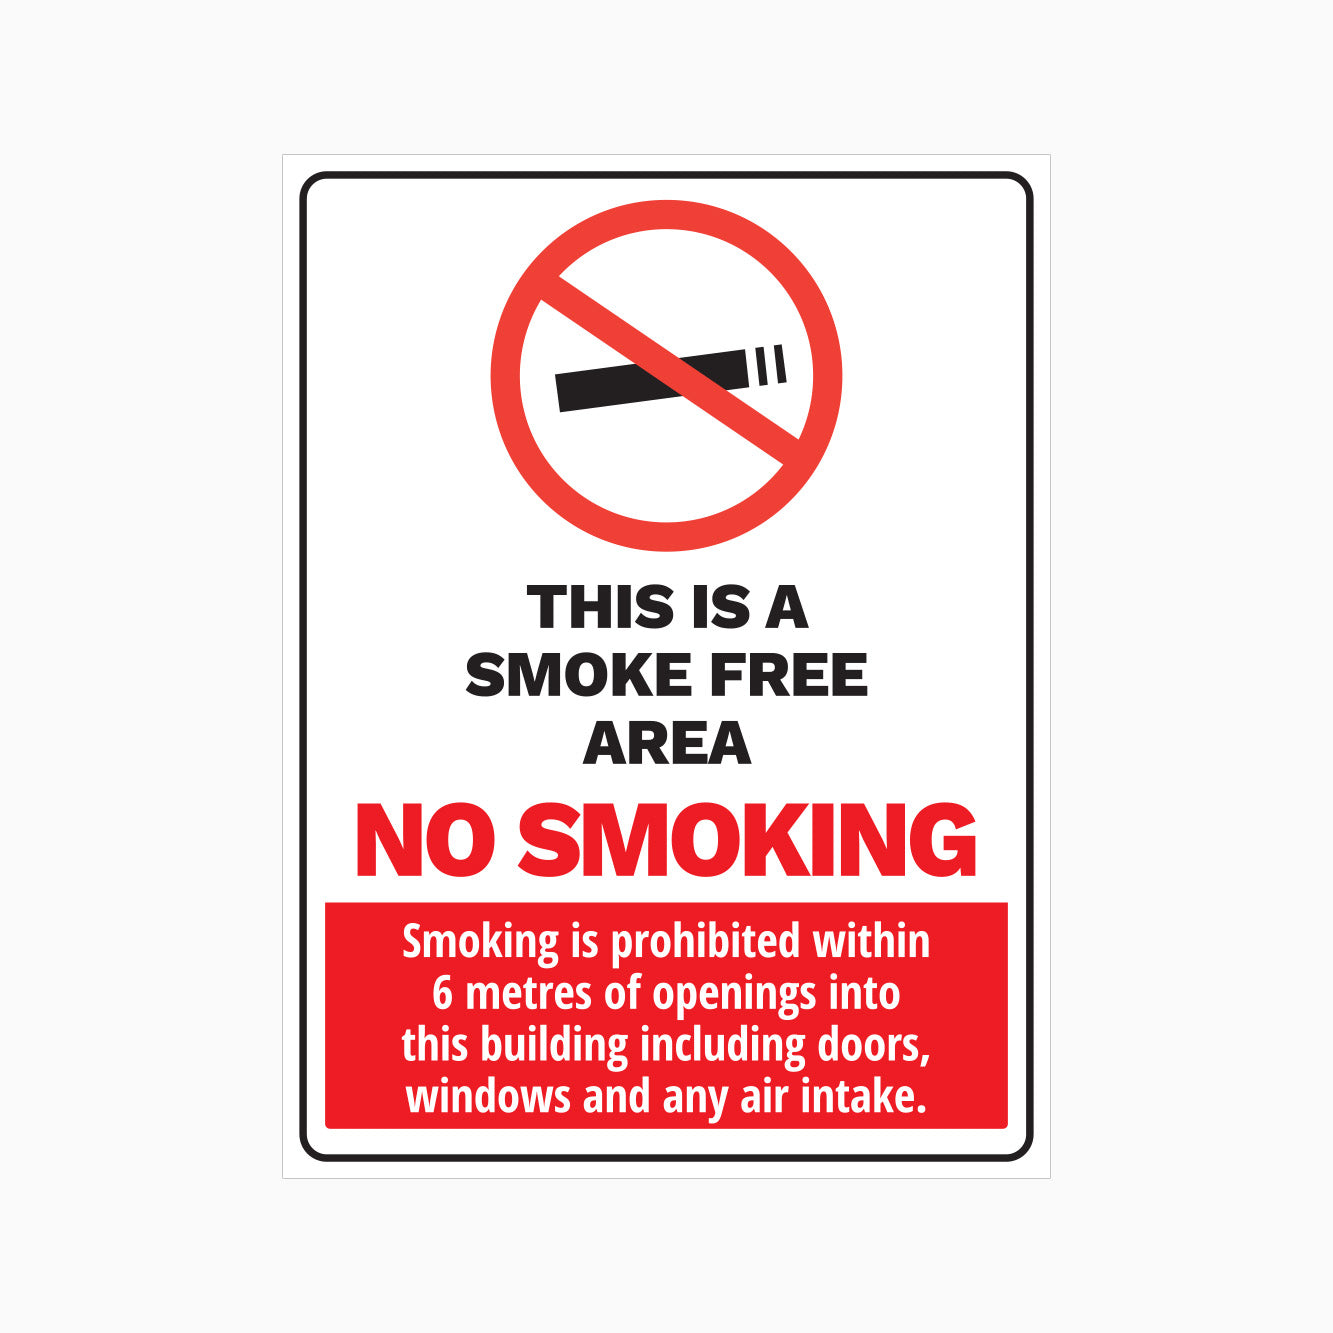 THIS IS SMOKE FREE AREA - NO SMOKING SIGN